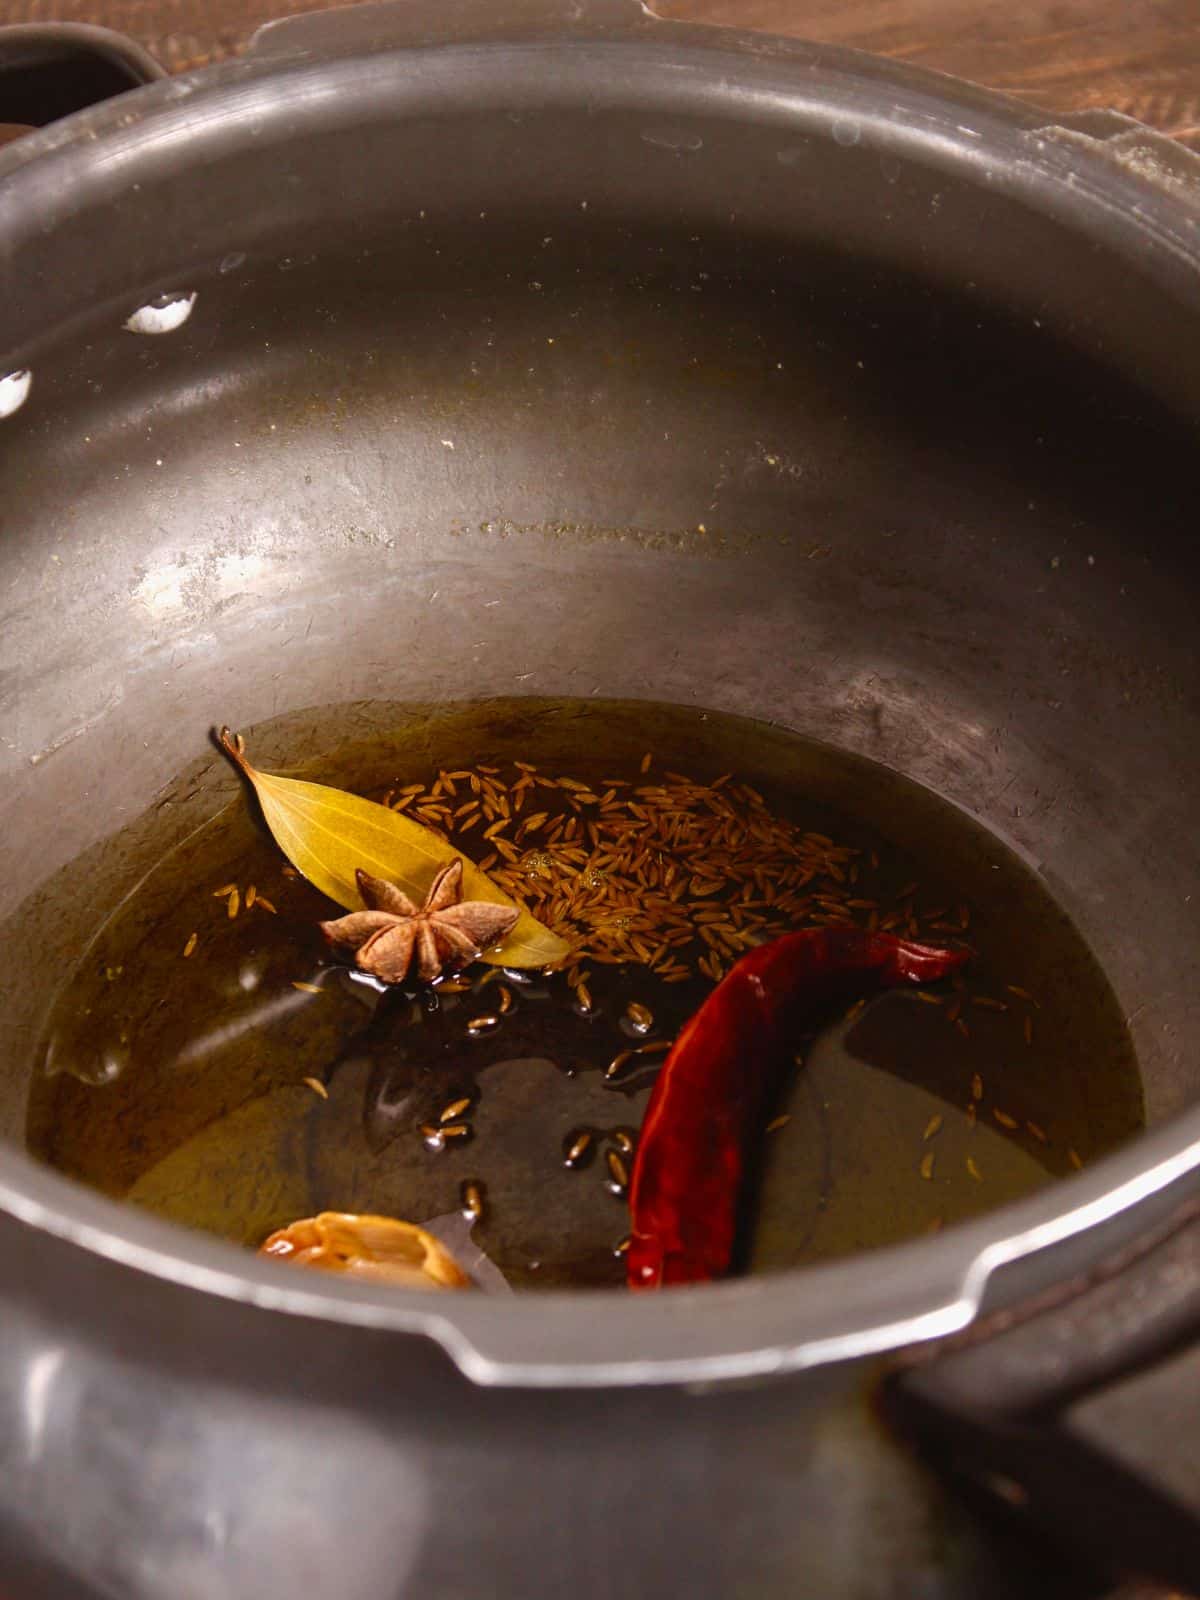 cumin seeds, leaf etc in a pot 